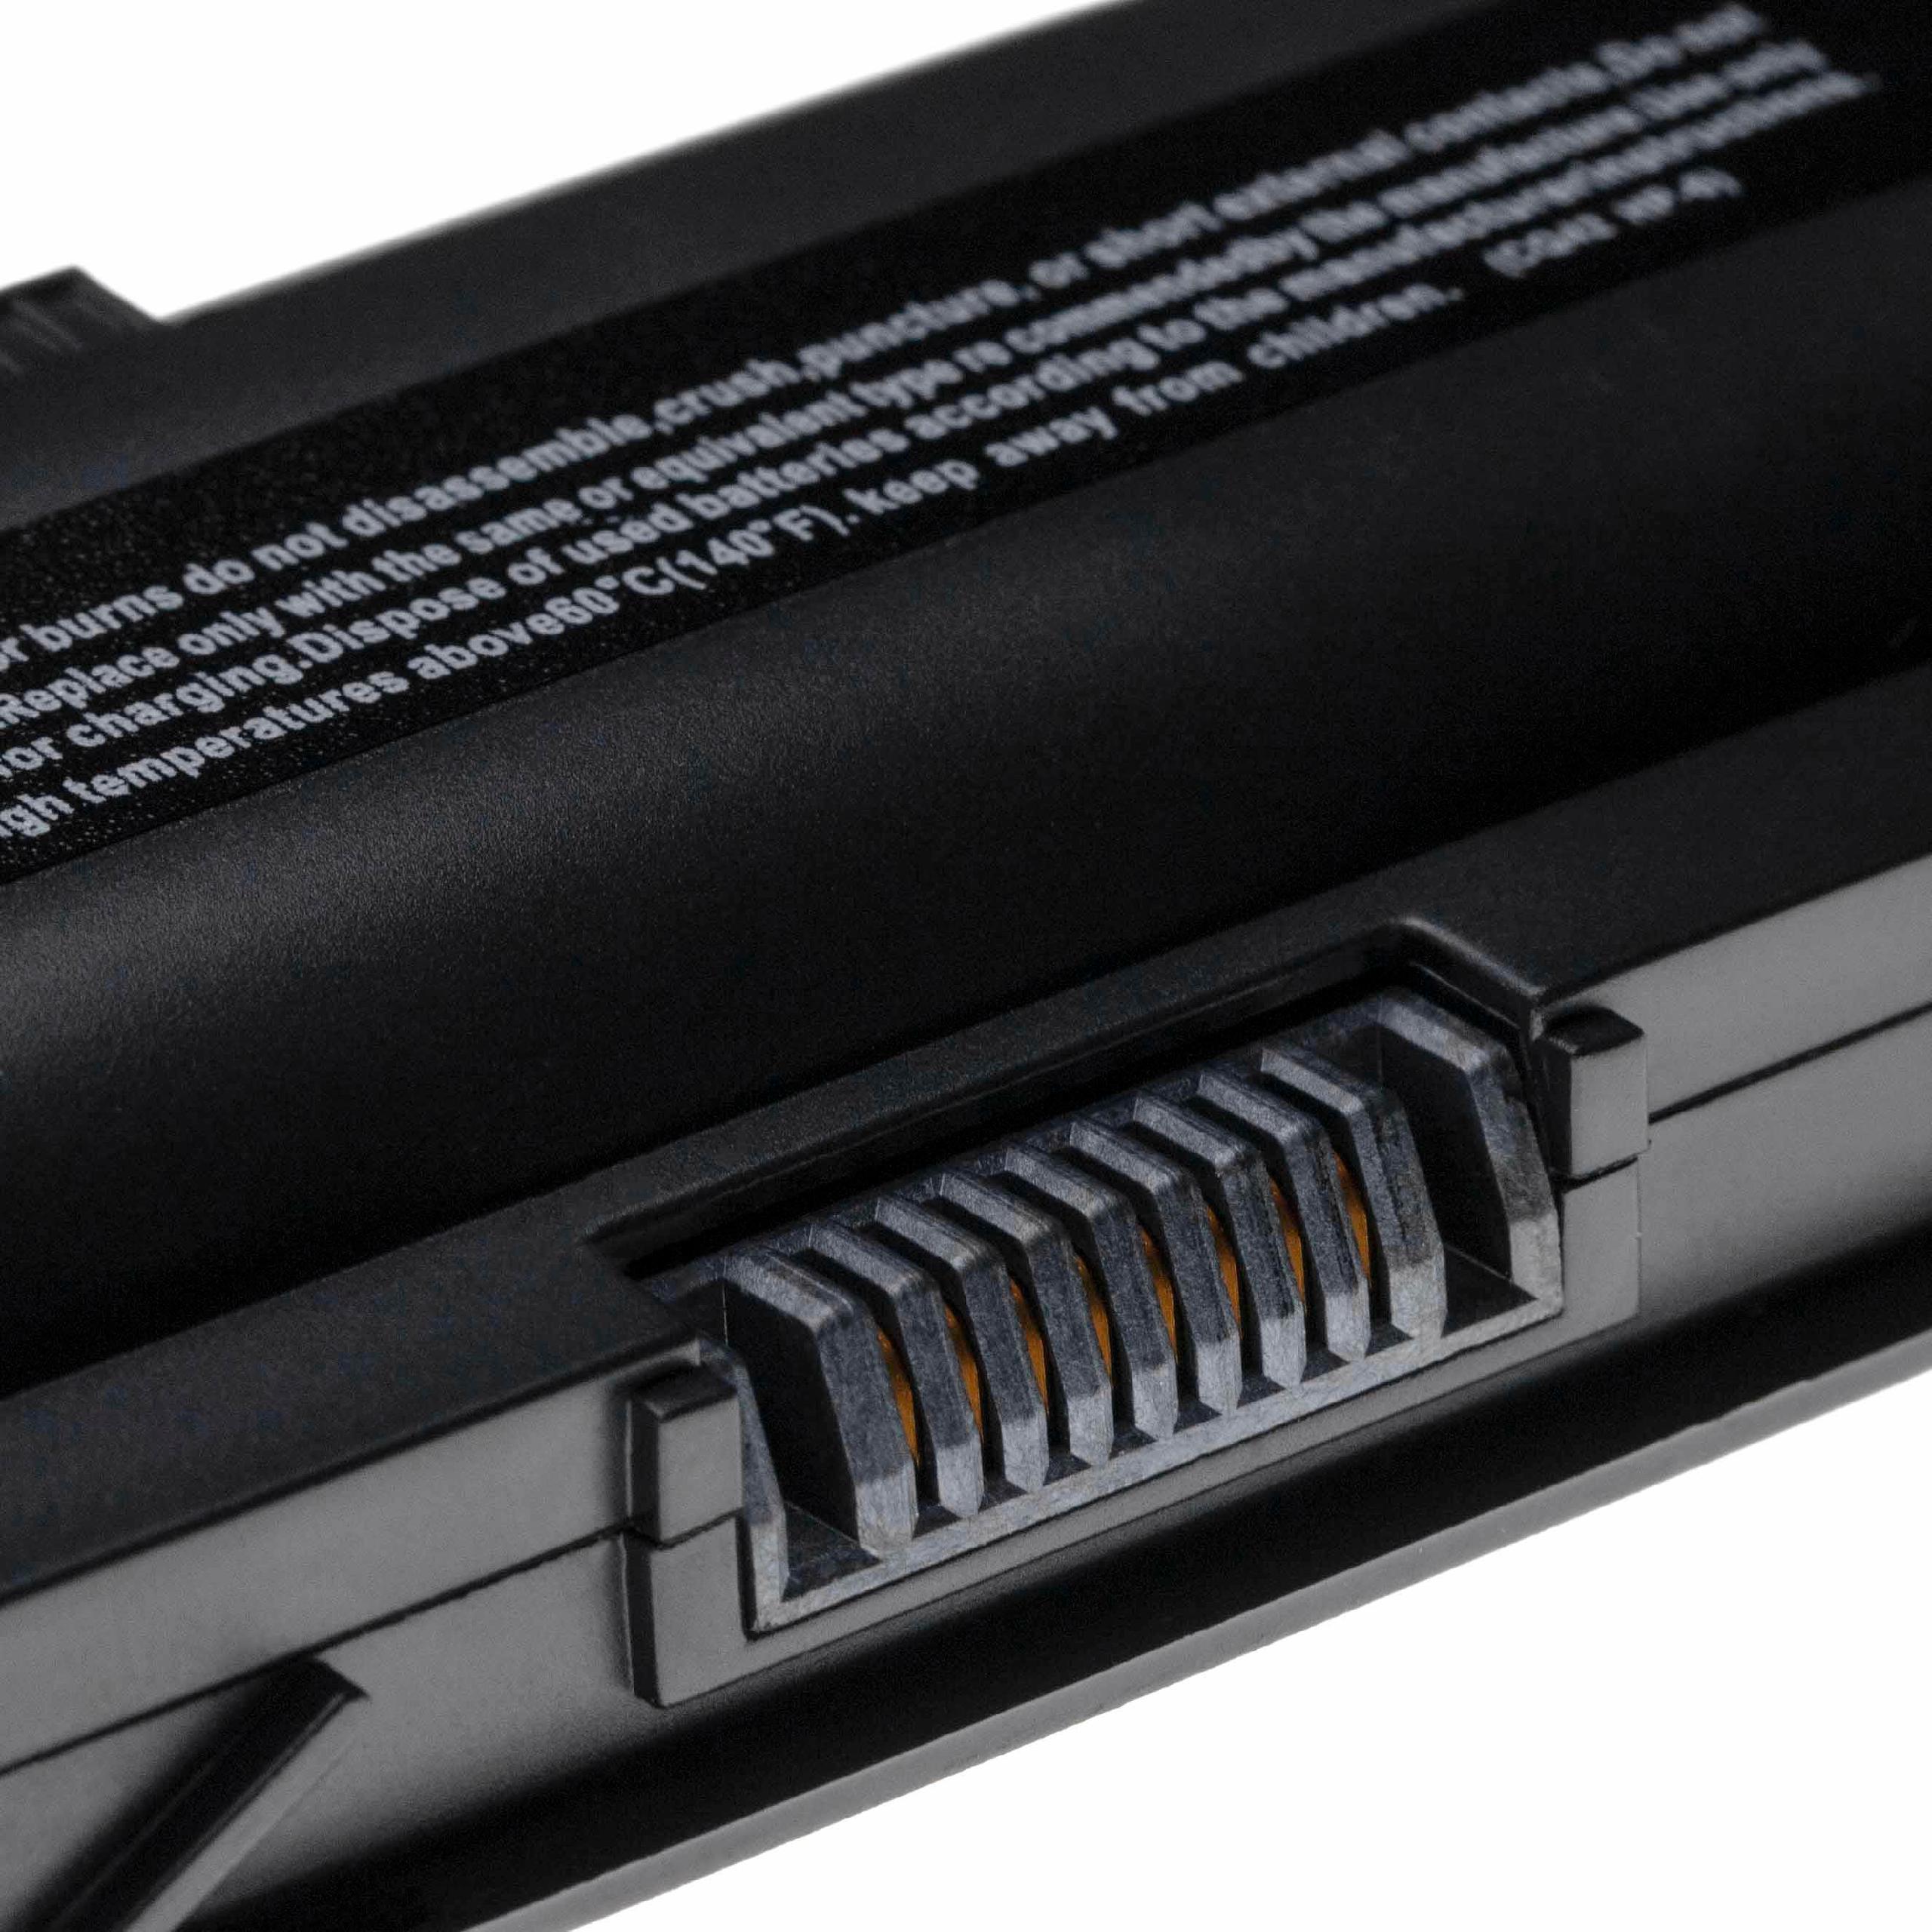 Batterie remplace HP / Compaq 586006-361, 586006-321 pour ordinateur portable - 5200mAh 10,8V Li-ion, noir